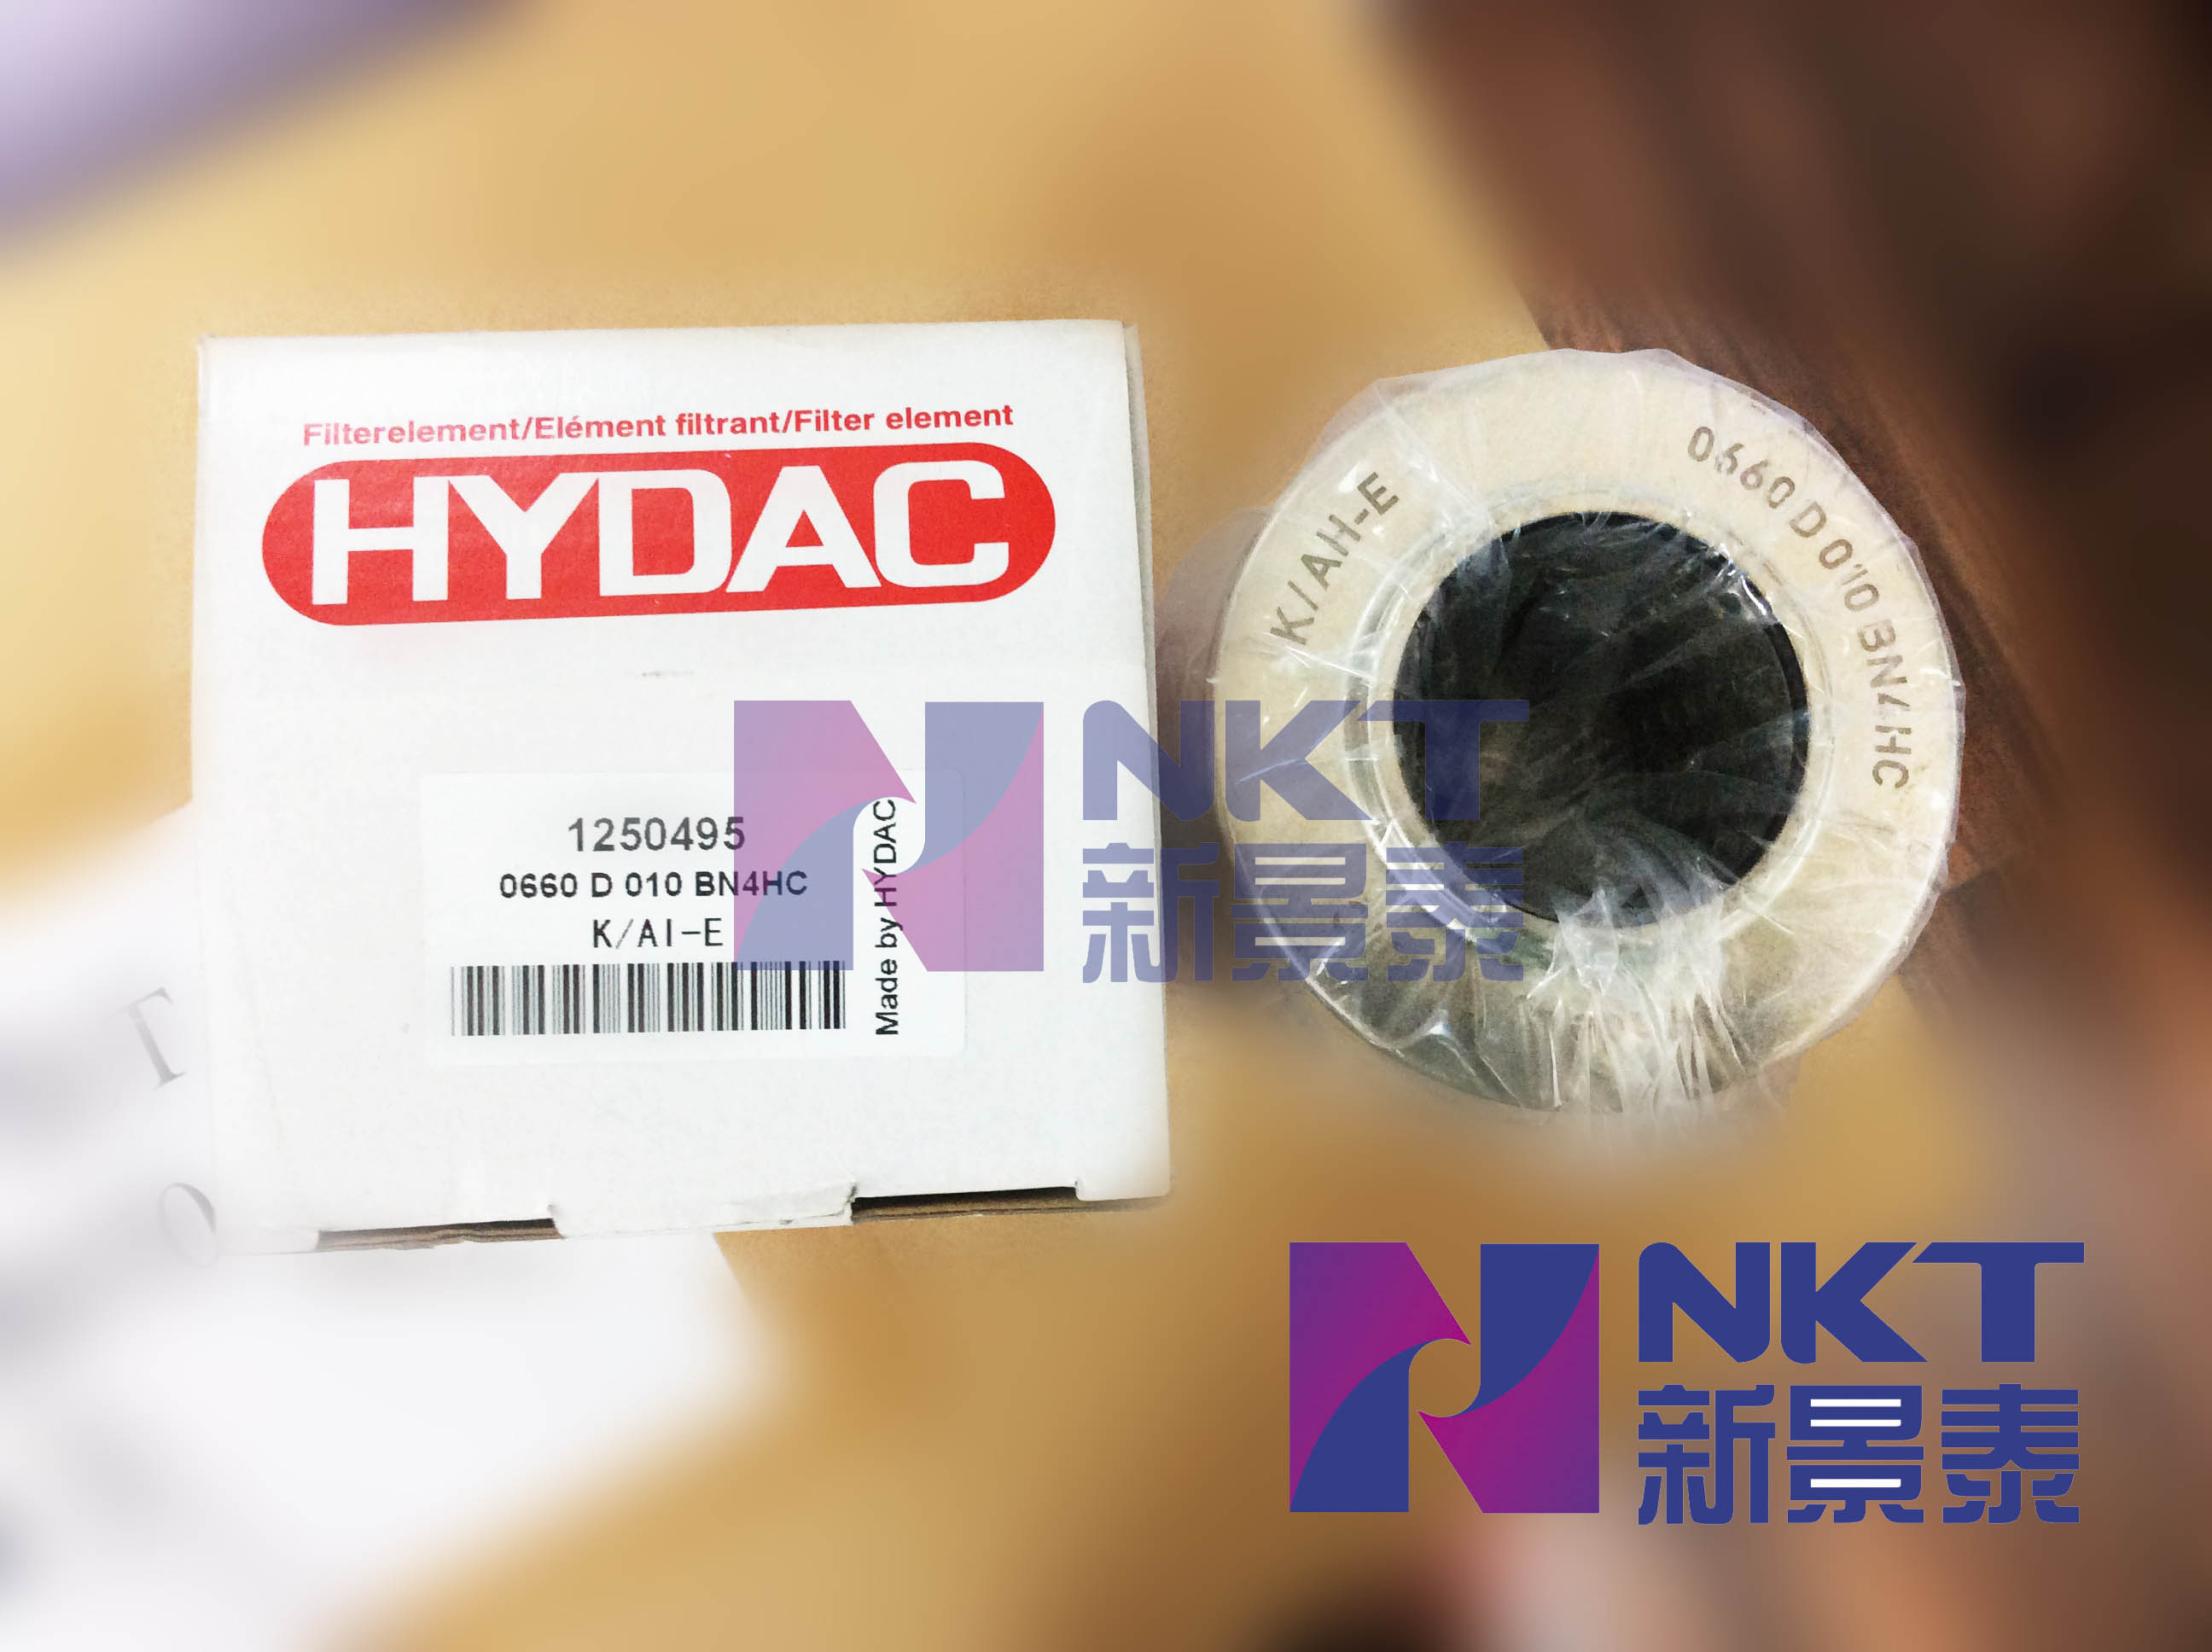 HYDAC贺德克 0660 D010 BN4HC 滤芯 恒力泰科达压机用